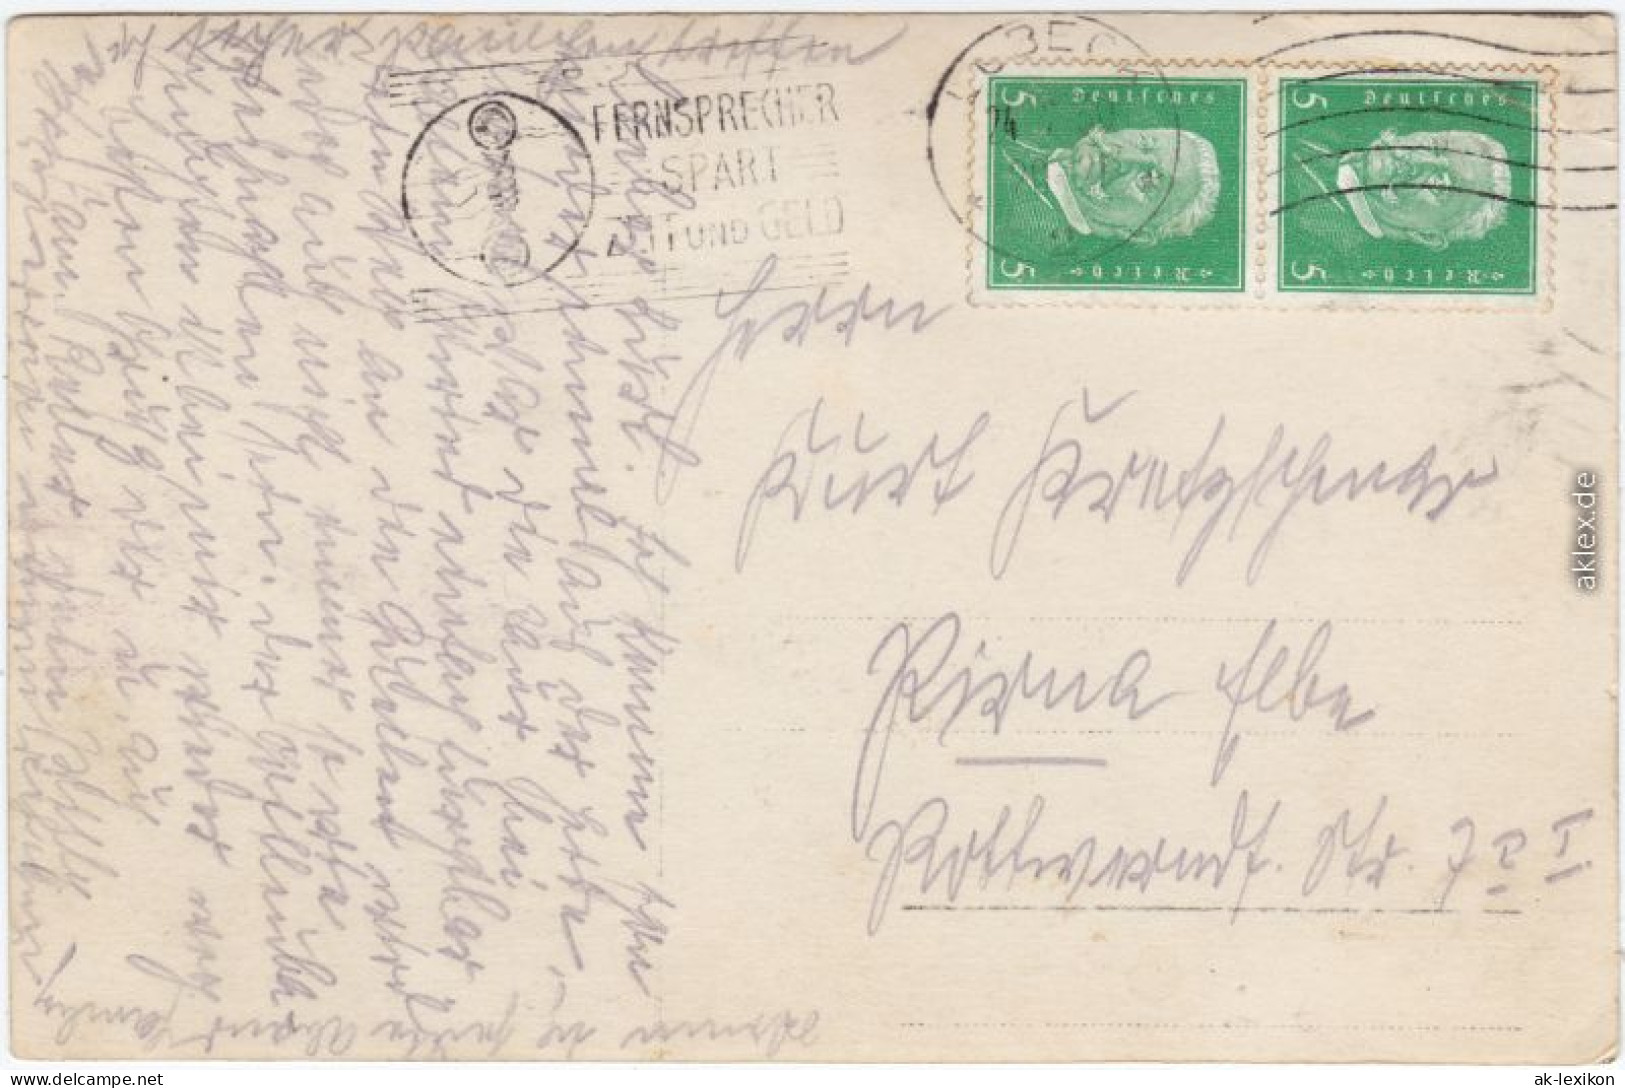 Ansichtskarte  Heidkoben 1925 - To Identify